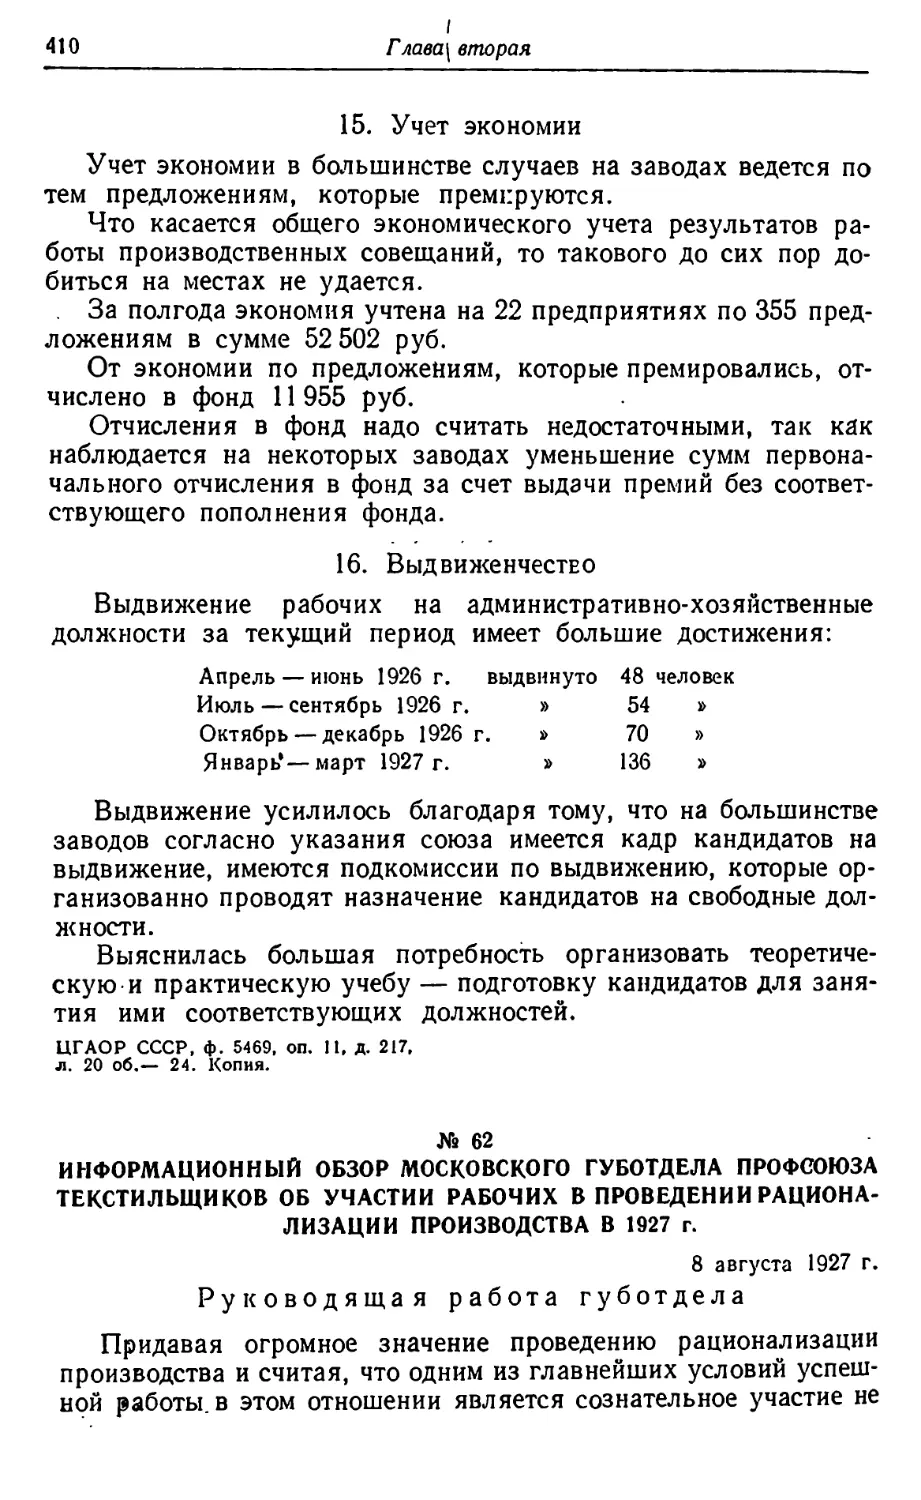 № 62. Информационный обзор Московского губотдела профсоюза текстильщиков об участии рабочих в проведении рационализации производства в 1927 г. 8 августа 1927 г